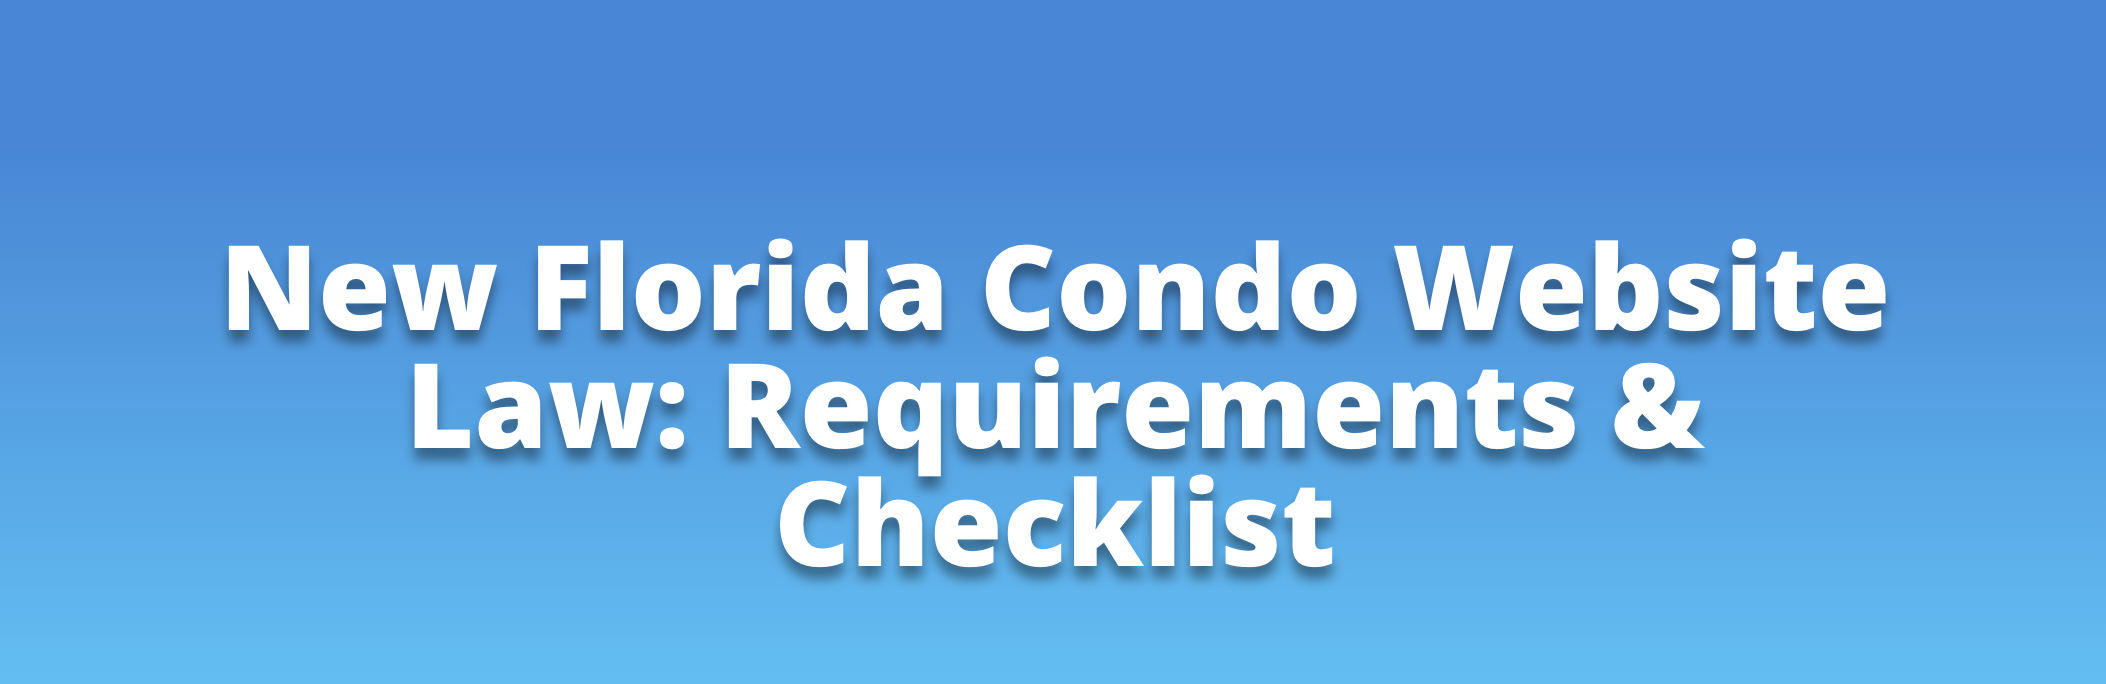 New Florida Condo Website Law Requirements & Checklist